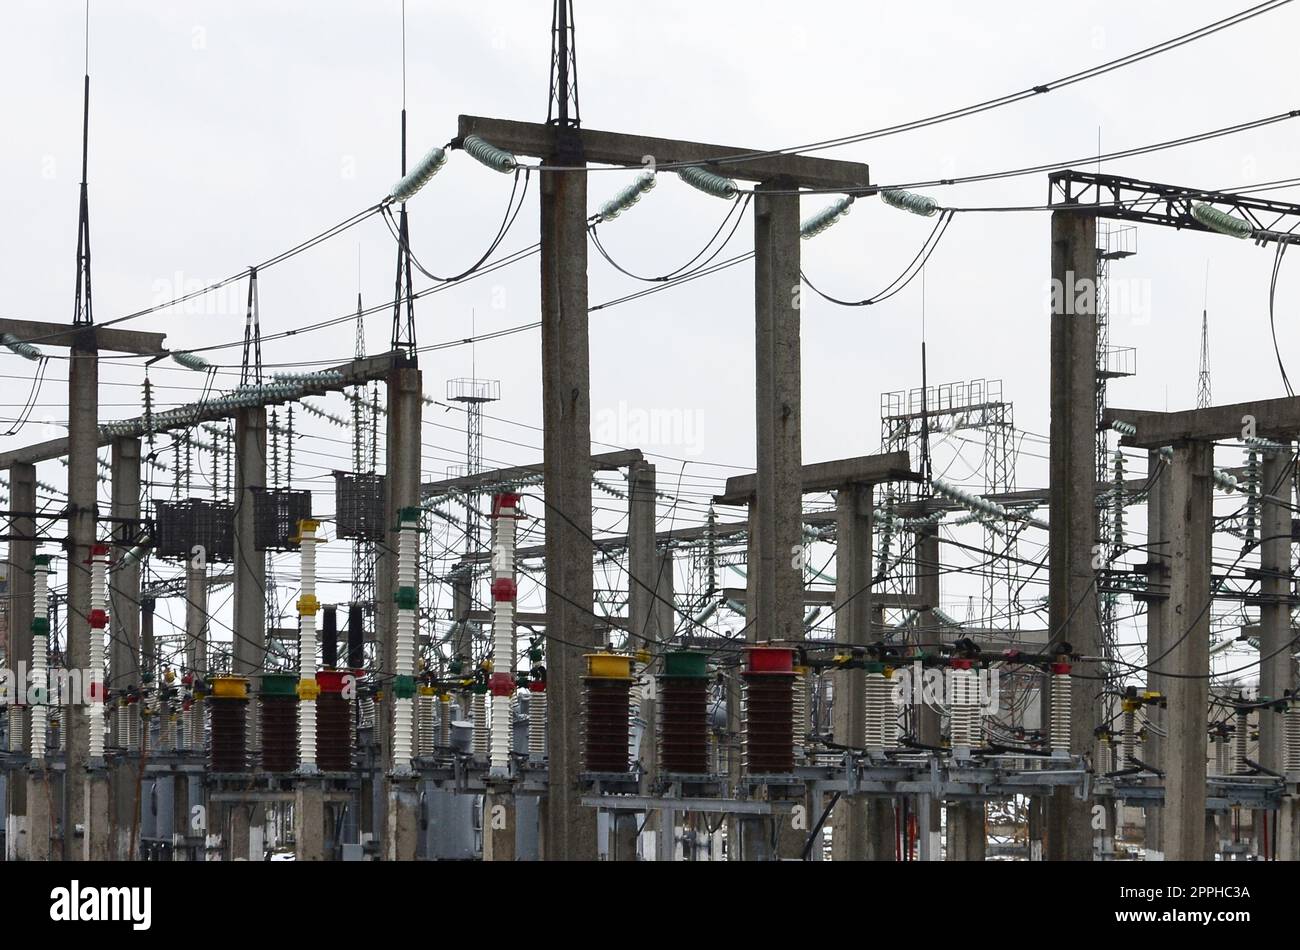 Kraftwerk ist eine Station der Transformation. Viele Kabel, Pole und Drähte, Transformatoren. Elektroenergie. Stockfoto